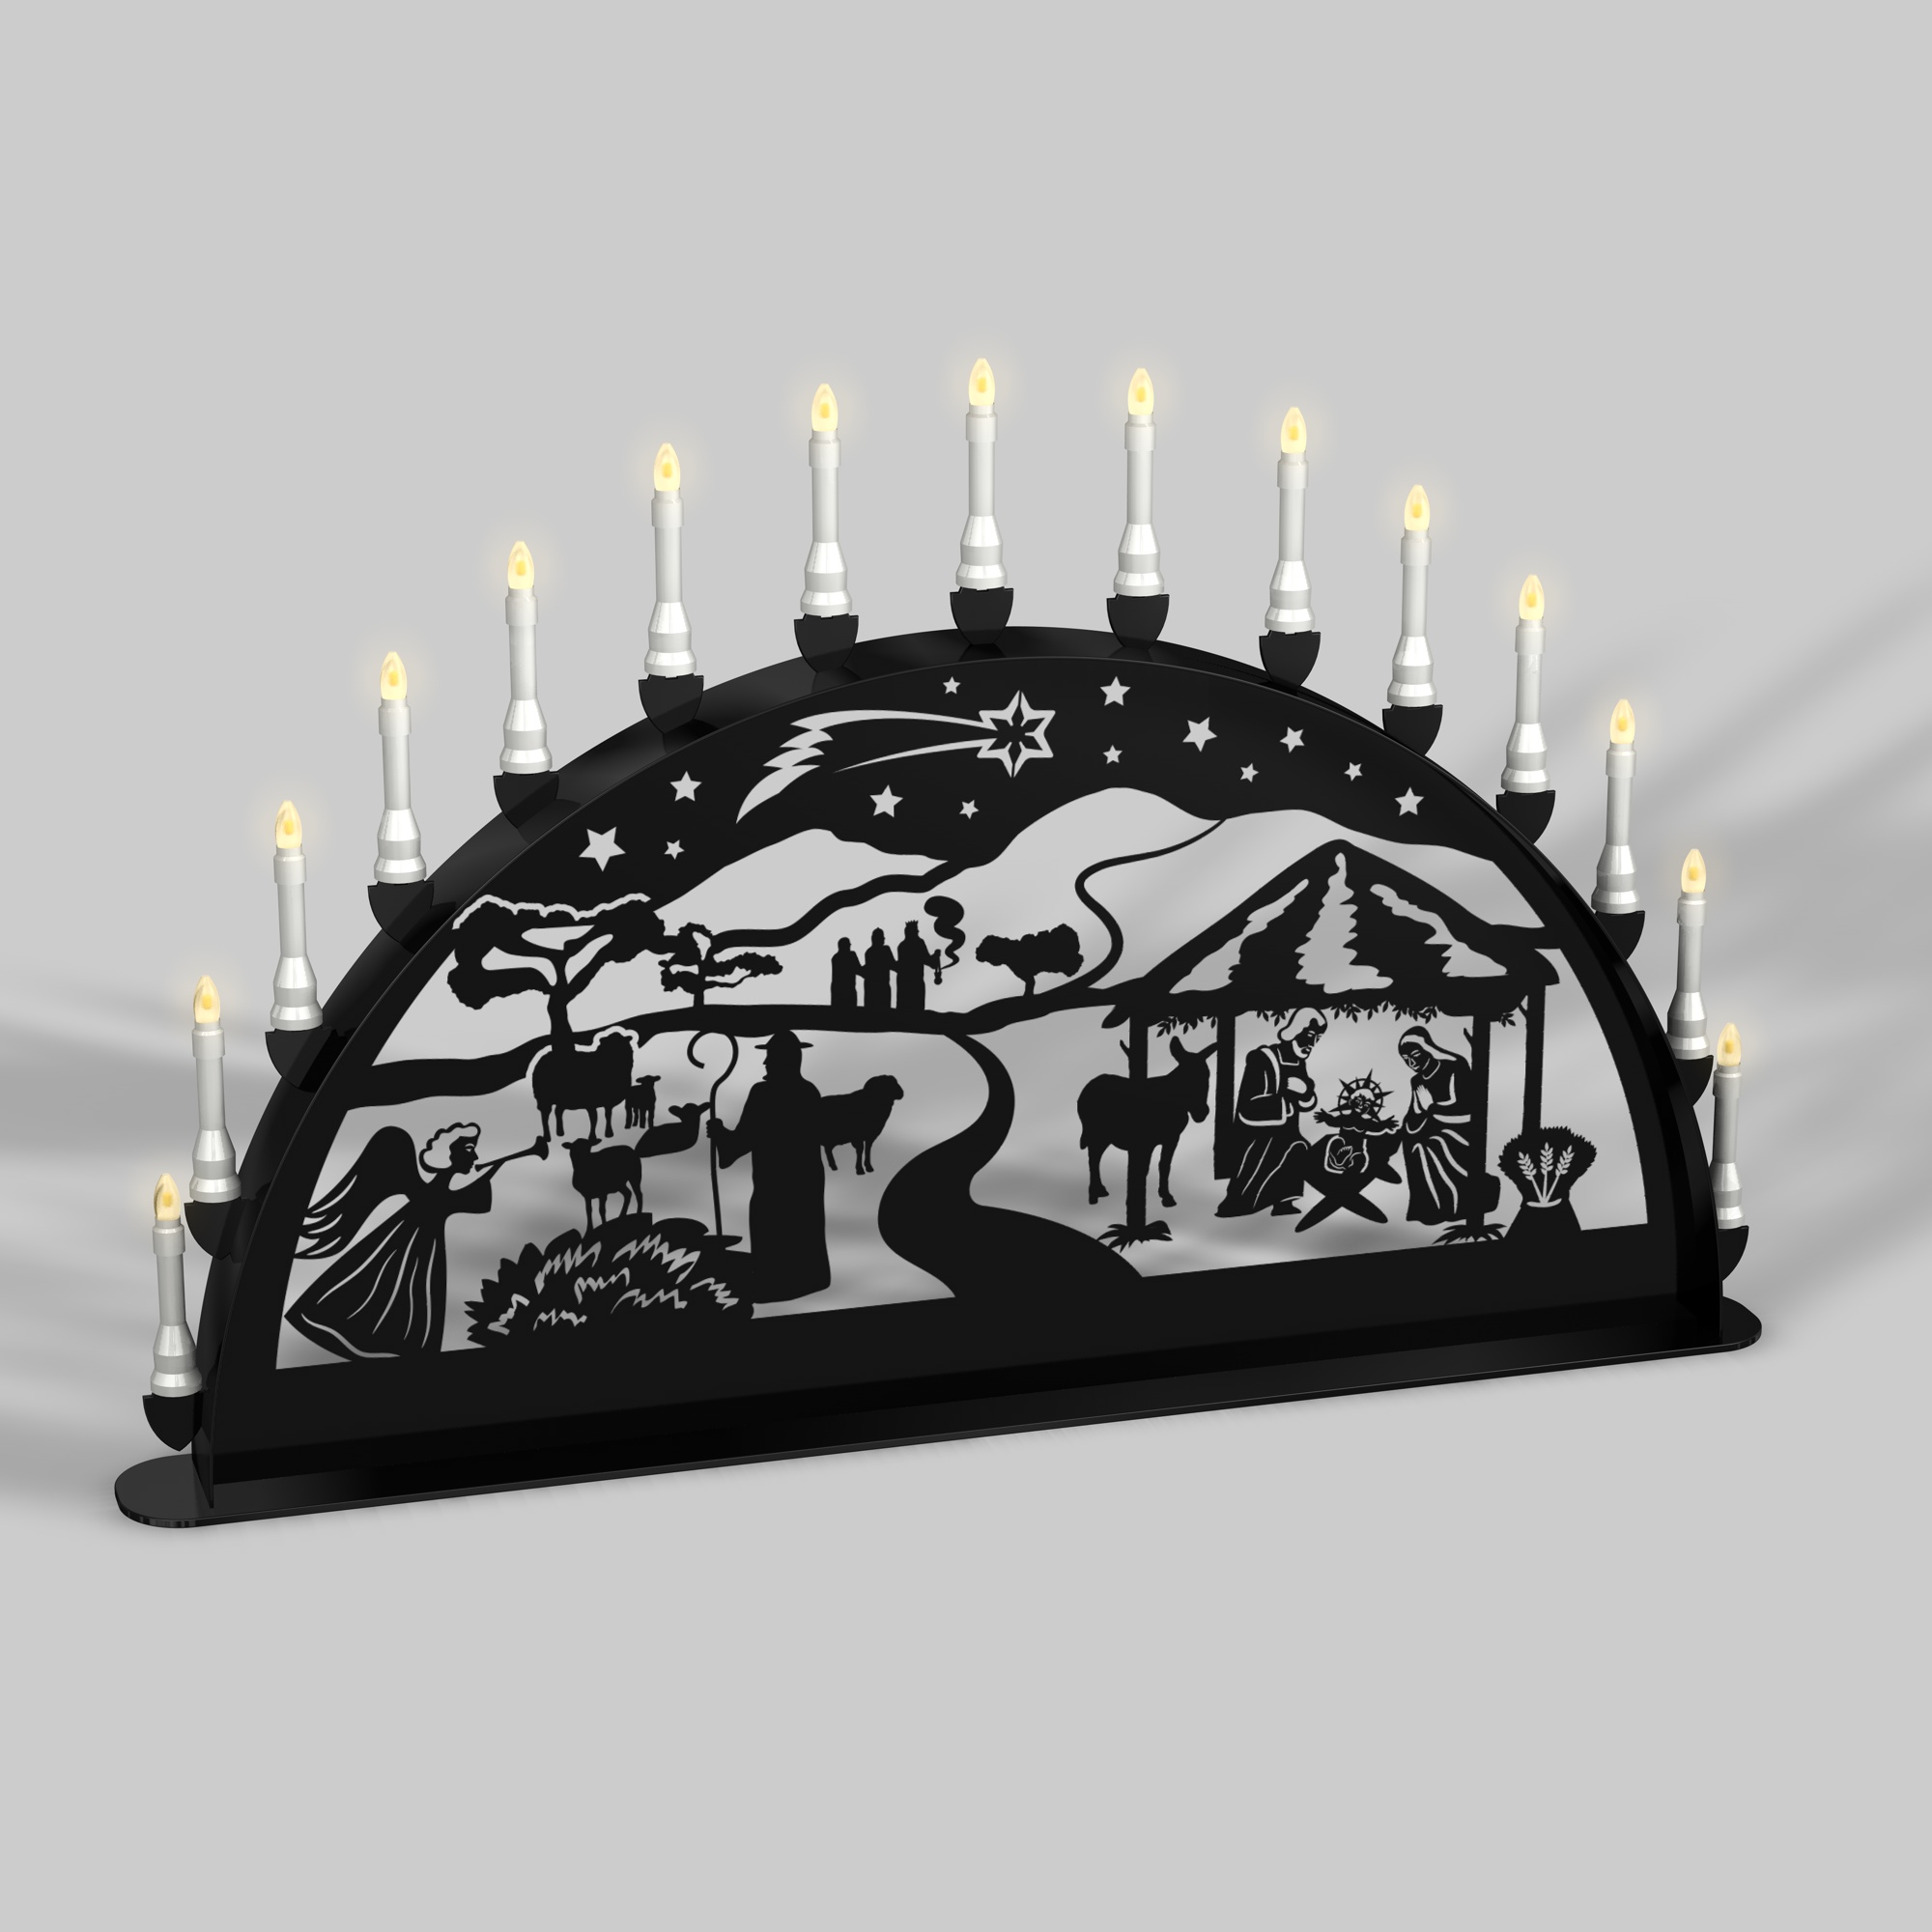 Außenschwibbogen Schwibbogen Lichterbogen Metall - Motiv: Geburt Jesus Christus 1,2 m tiefschwarz (RAL 9005) glänzend